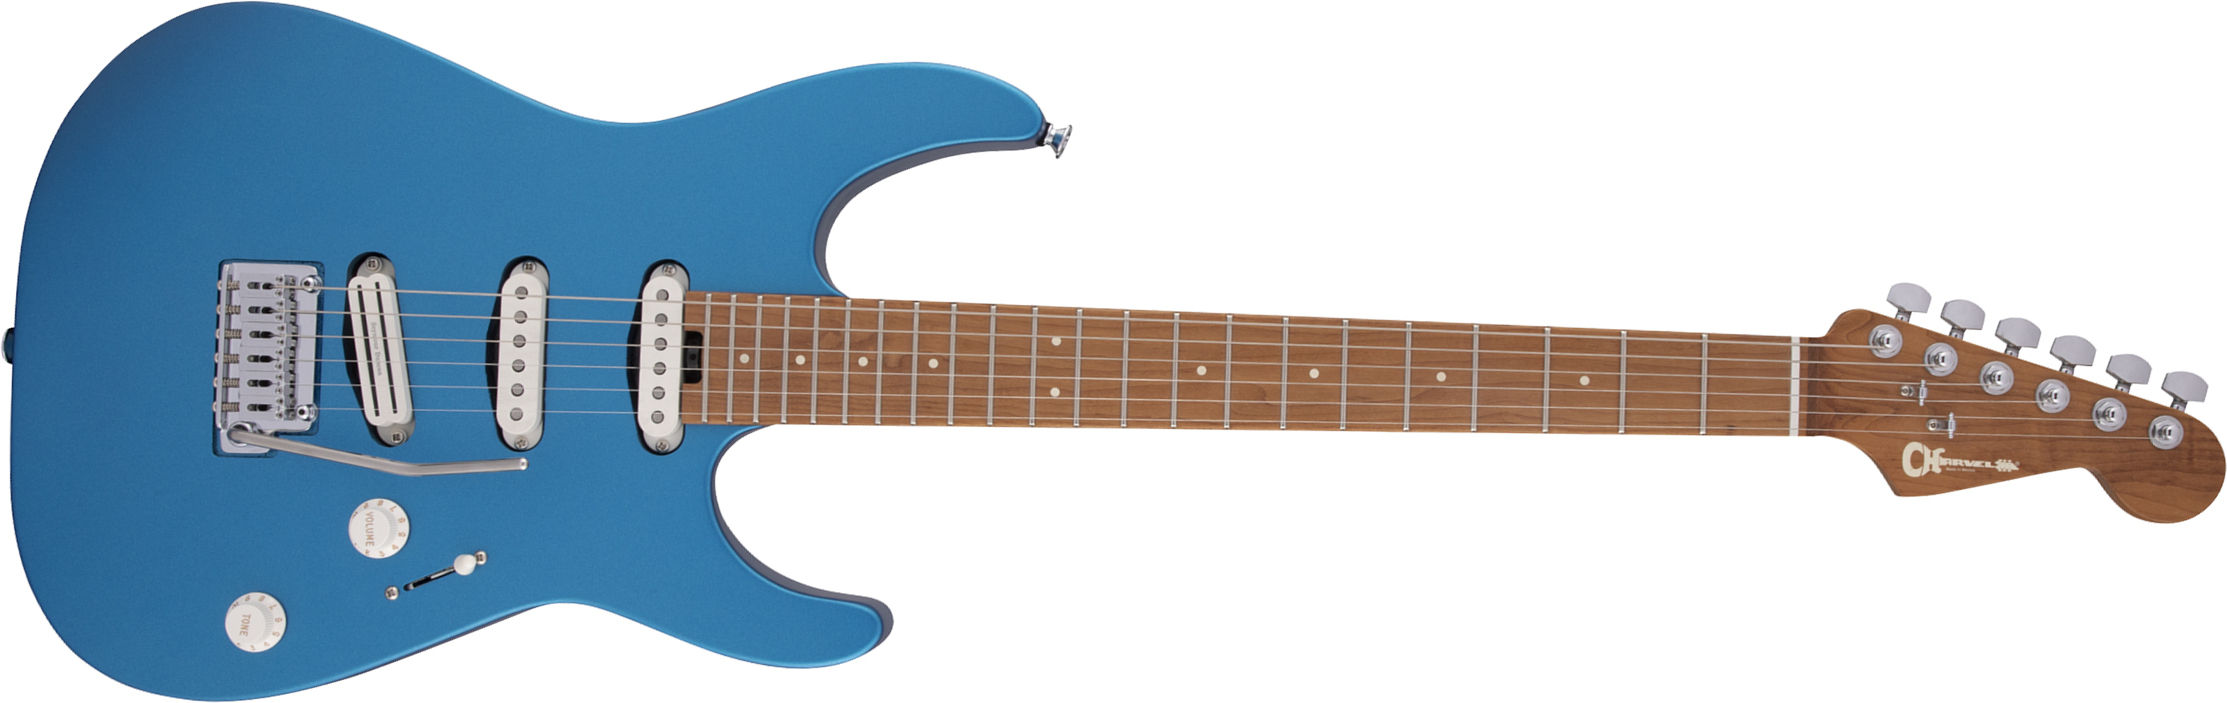 Charvel Dinky Dk22 Sss 2pt Cm Pro-mod 3s Seymour Duncan Mn - Electric Blue - Guitare Électrique MÉtal - Main picture